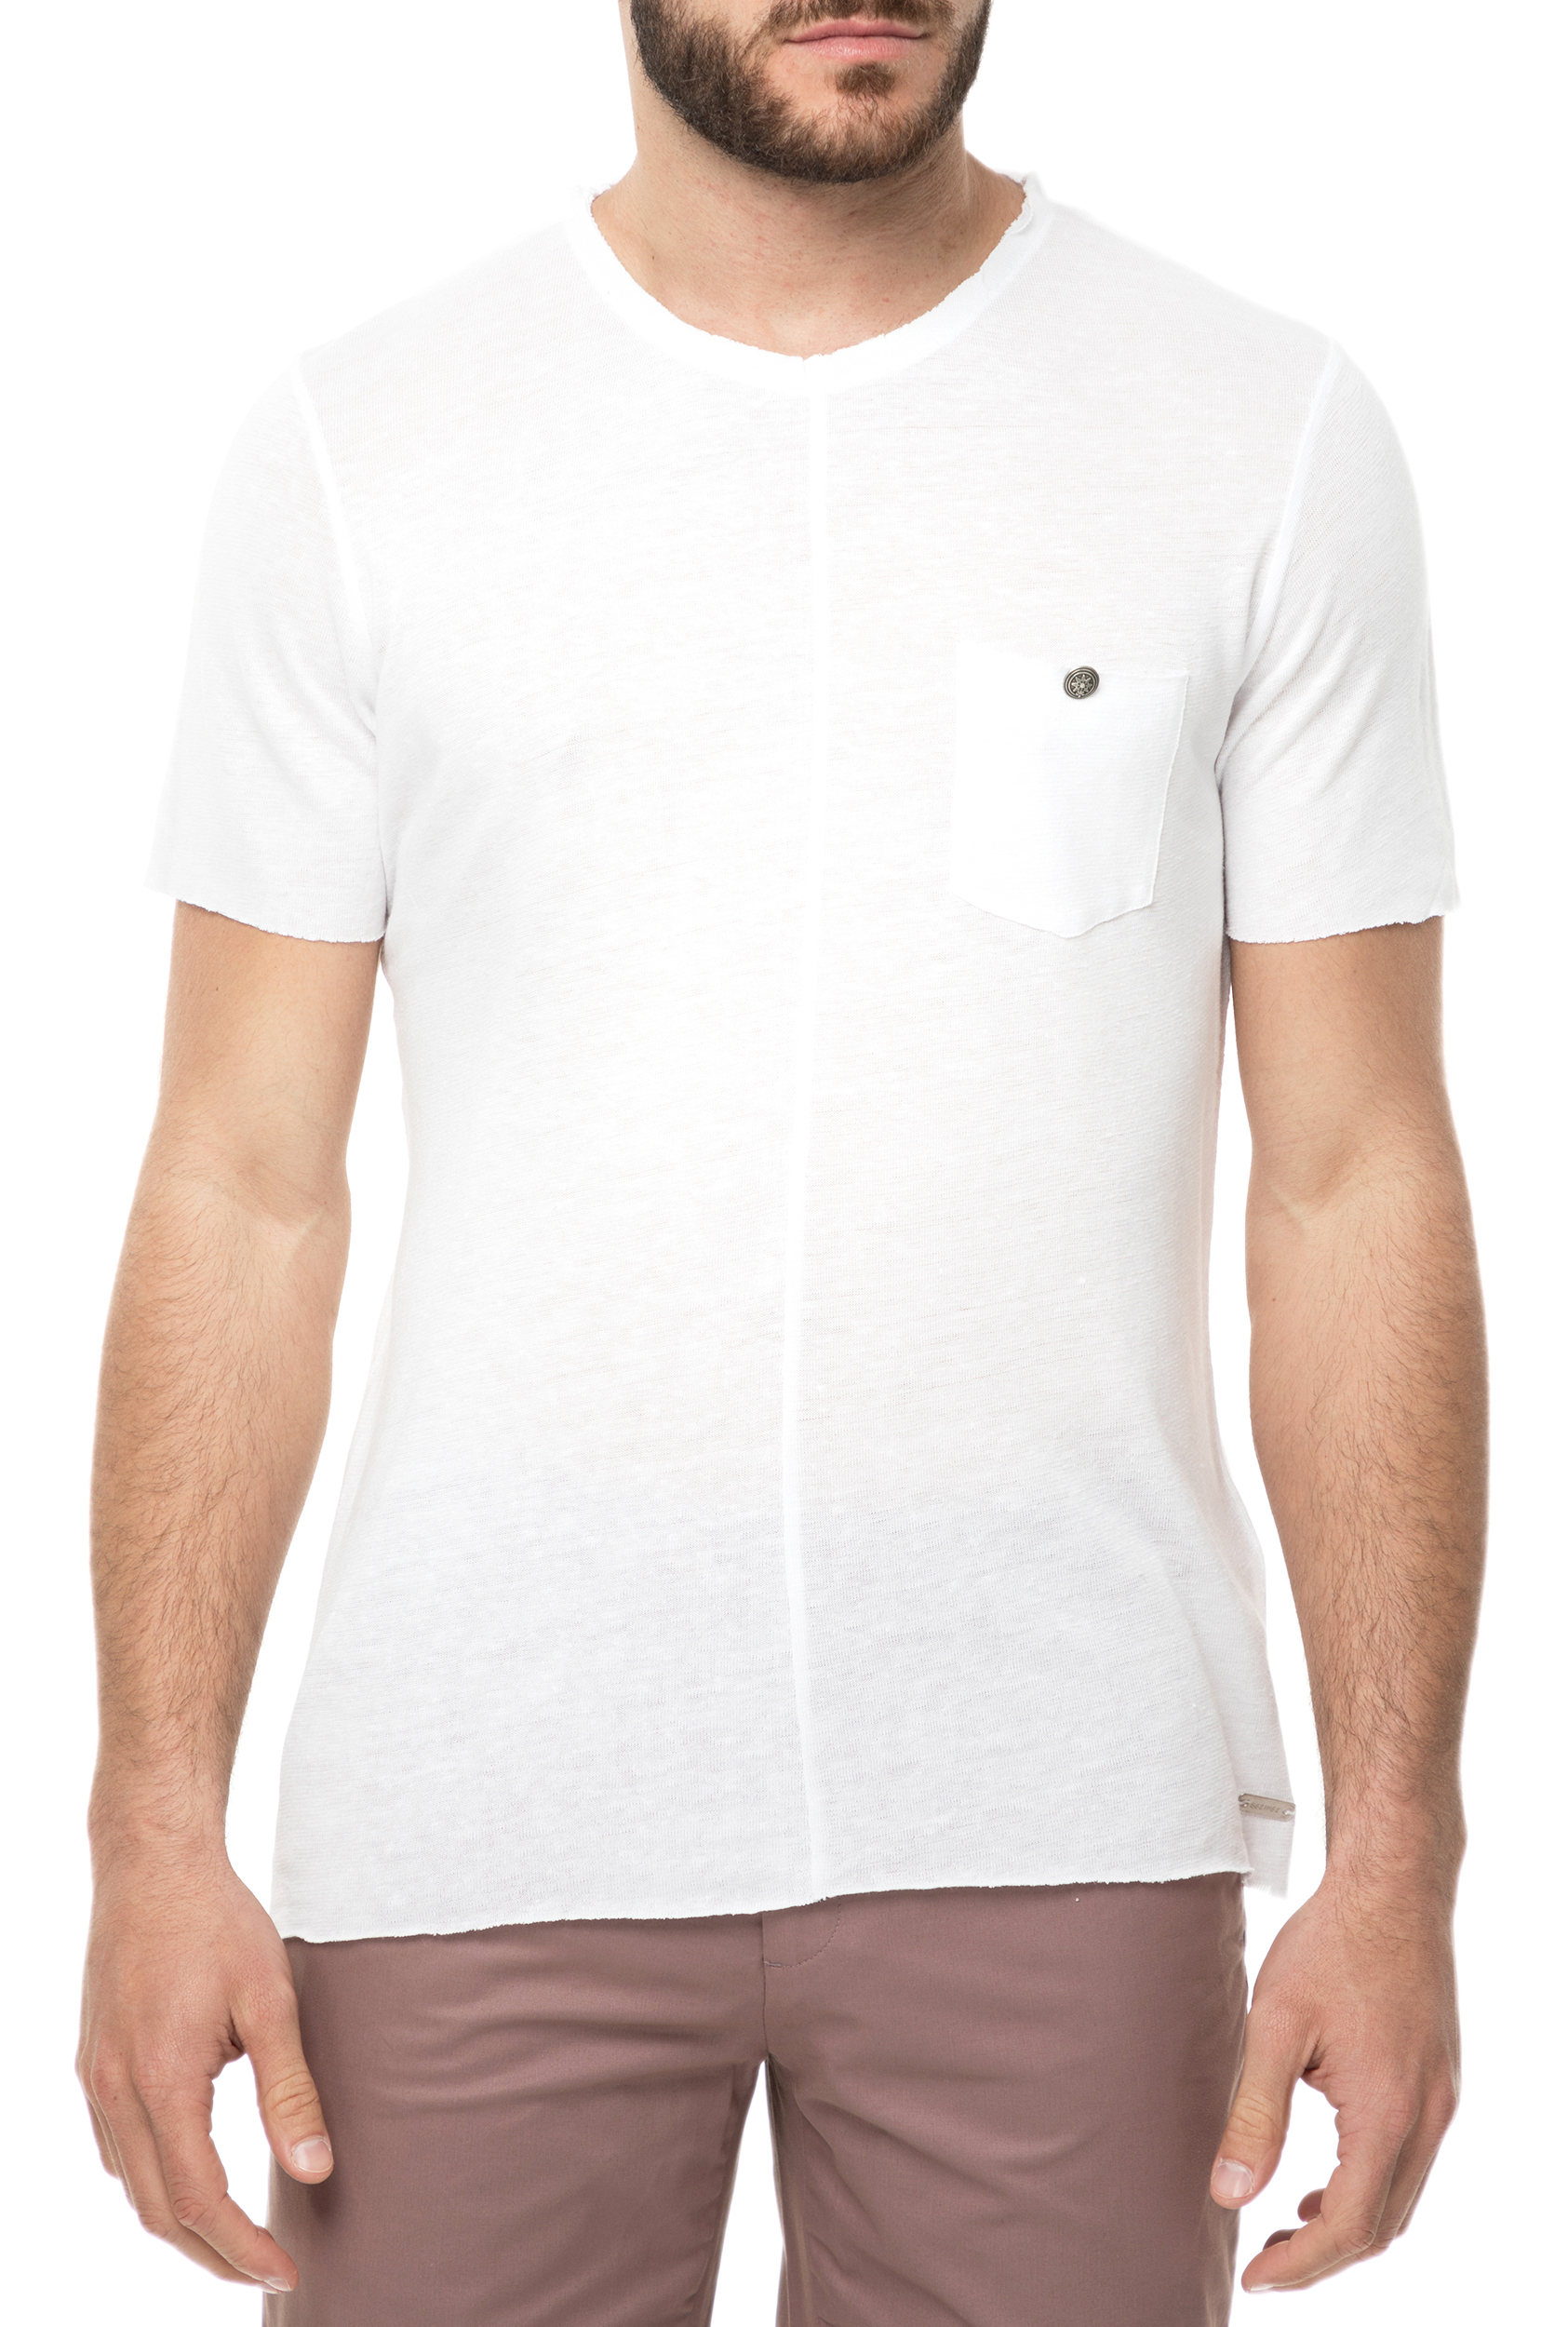 Ανδρικά/Ρούχα/Μπλούζες/Κοντομάνικες SSEINSE - Ανδρική κοντομάνικη μπλούζα SSEINSE λευκή